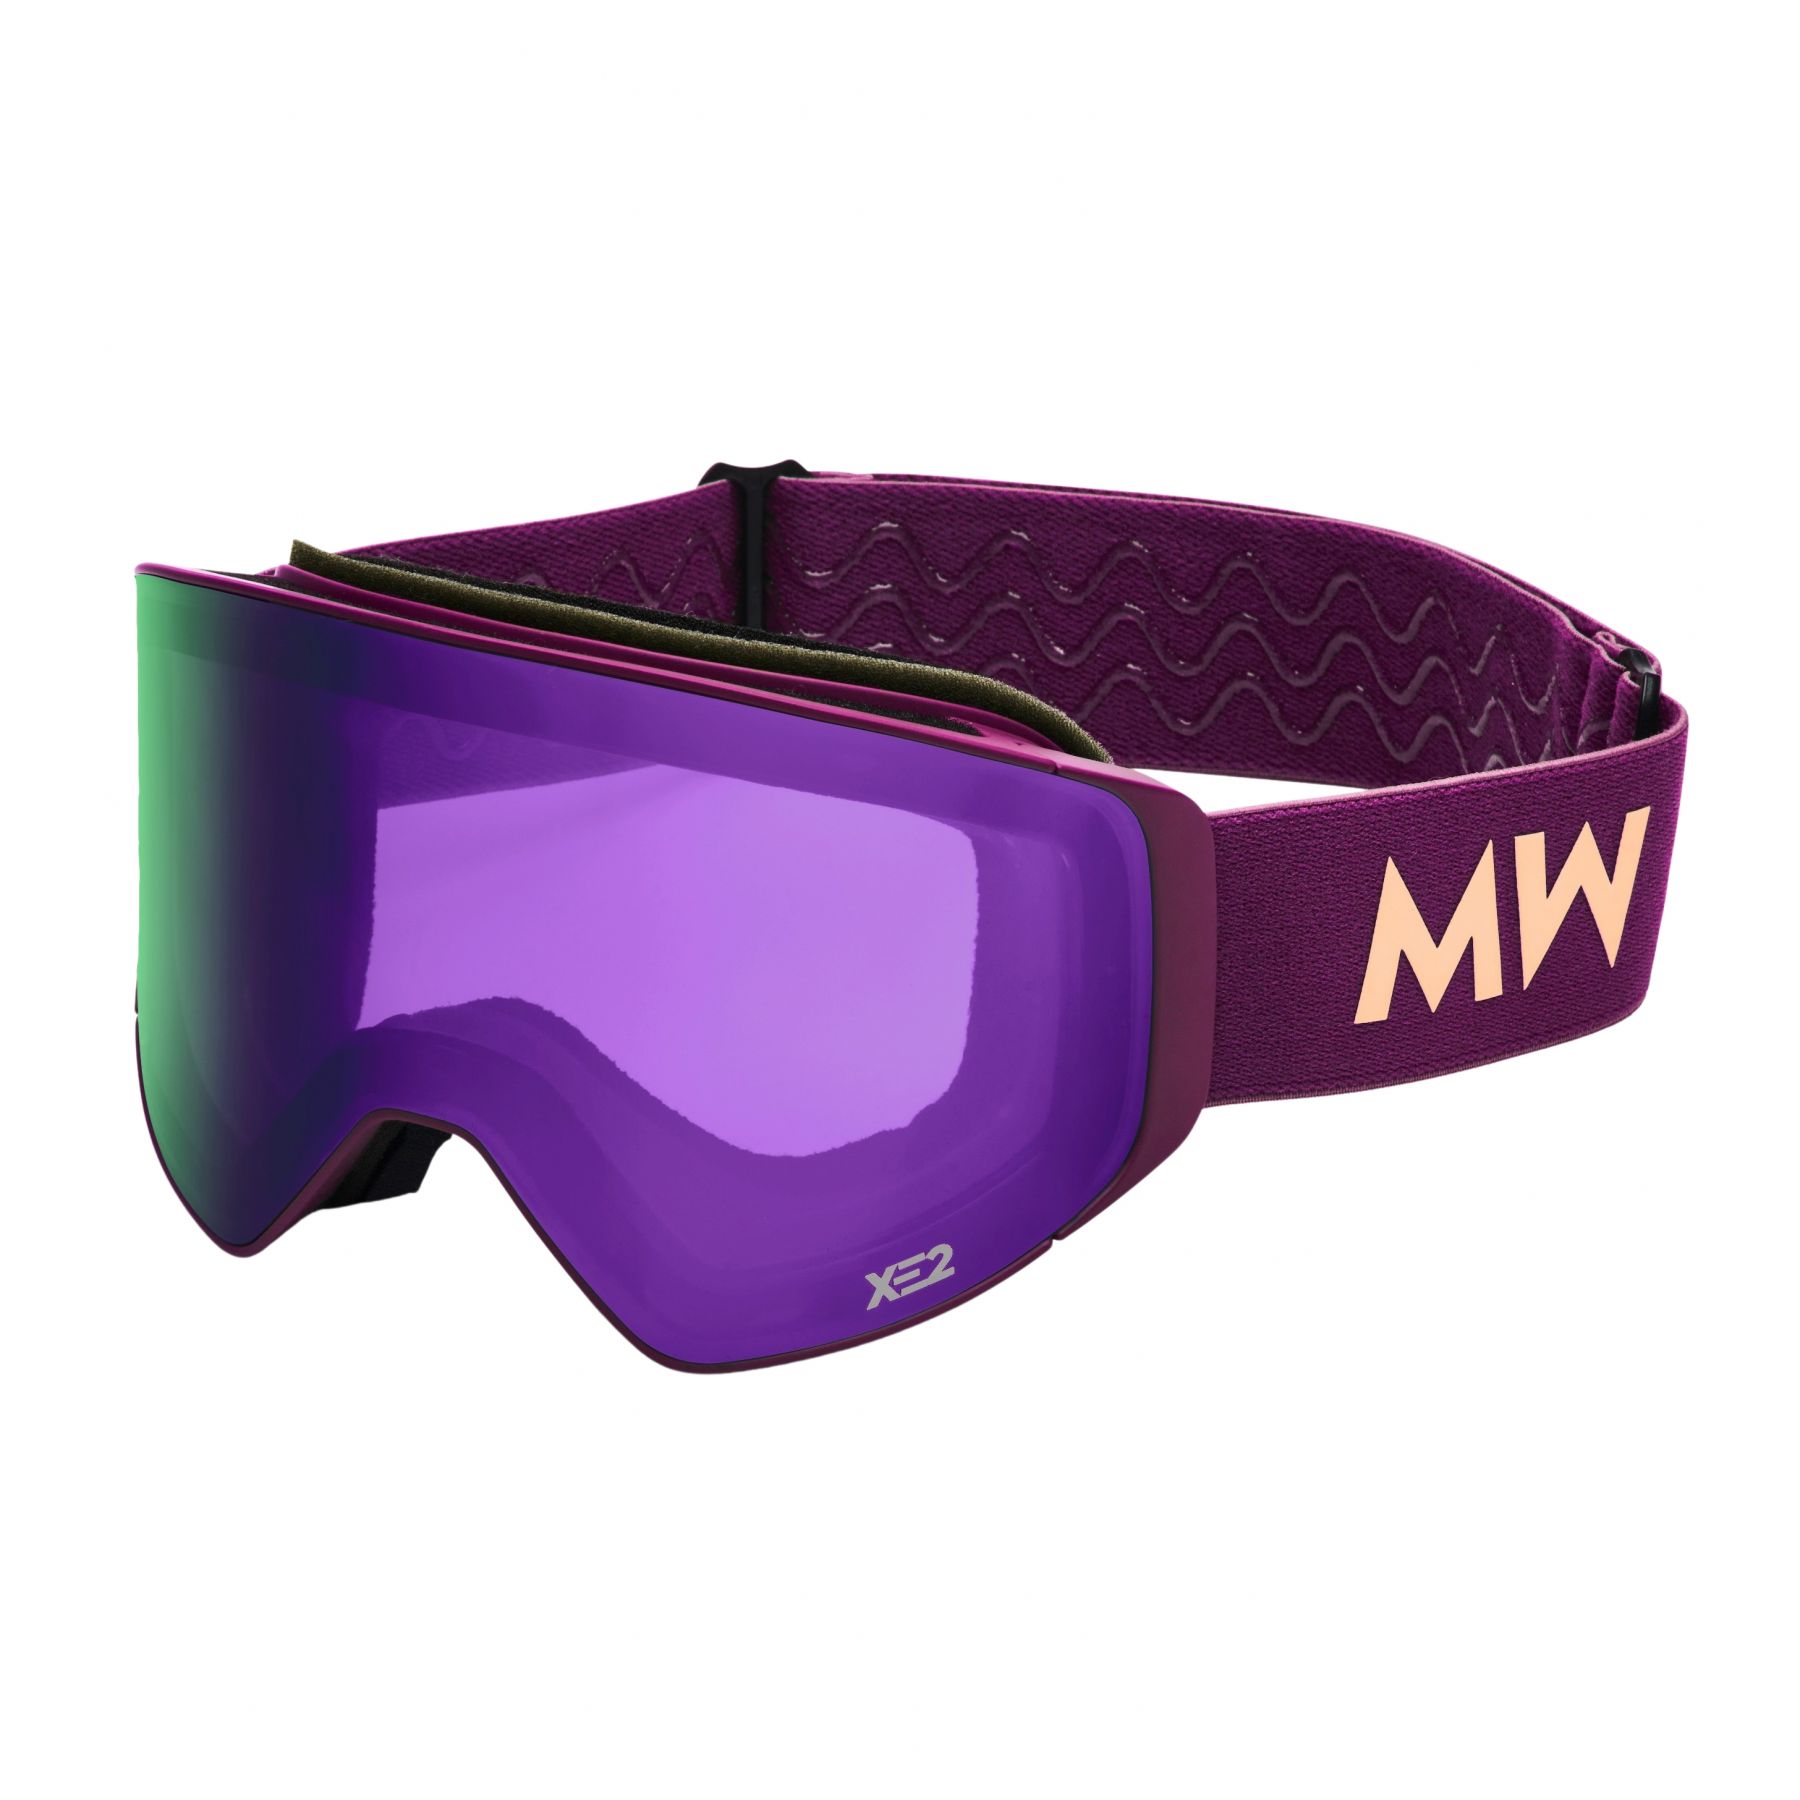 Brug MessyWeekend Clear XE2, skibriller, lilla til en forbedret oplevelse